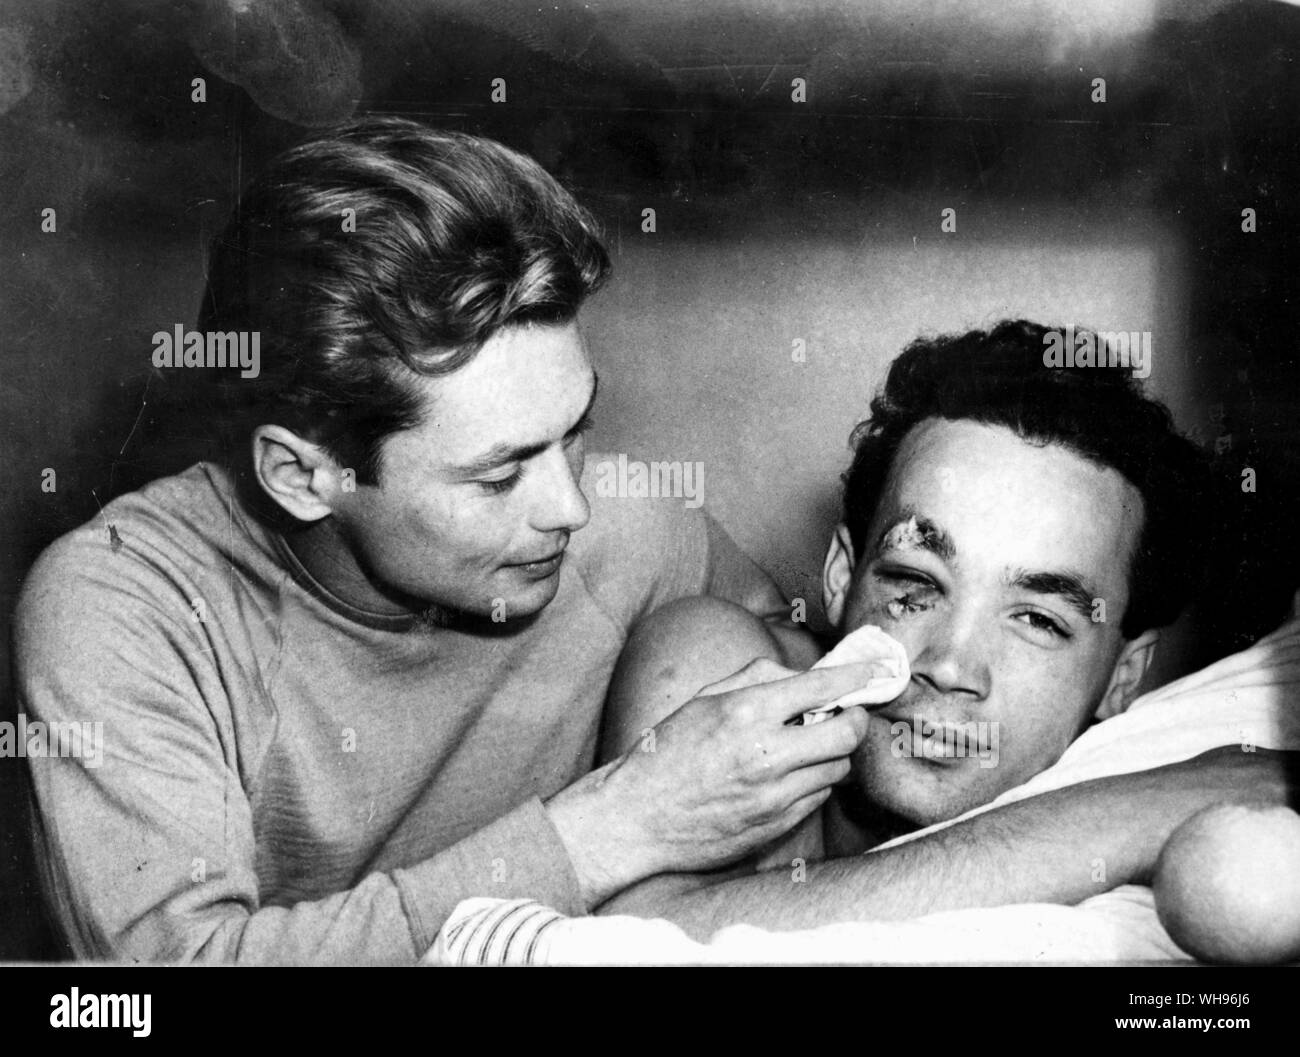 Aus., Melbourne, Olimpiadi, 1956: Ervin Zador (Ungheria) ottiene alcuni attenzione medica da un compagno di squadra, Miklos Martin, dopo un polo acquatico partita contro l'URSS. Foto Stock